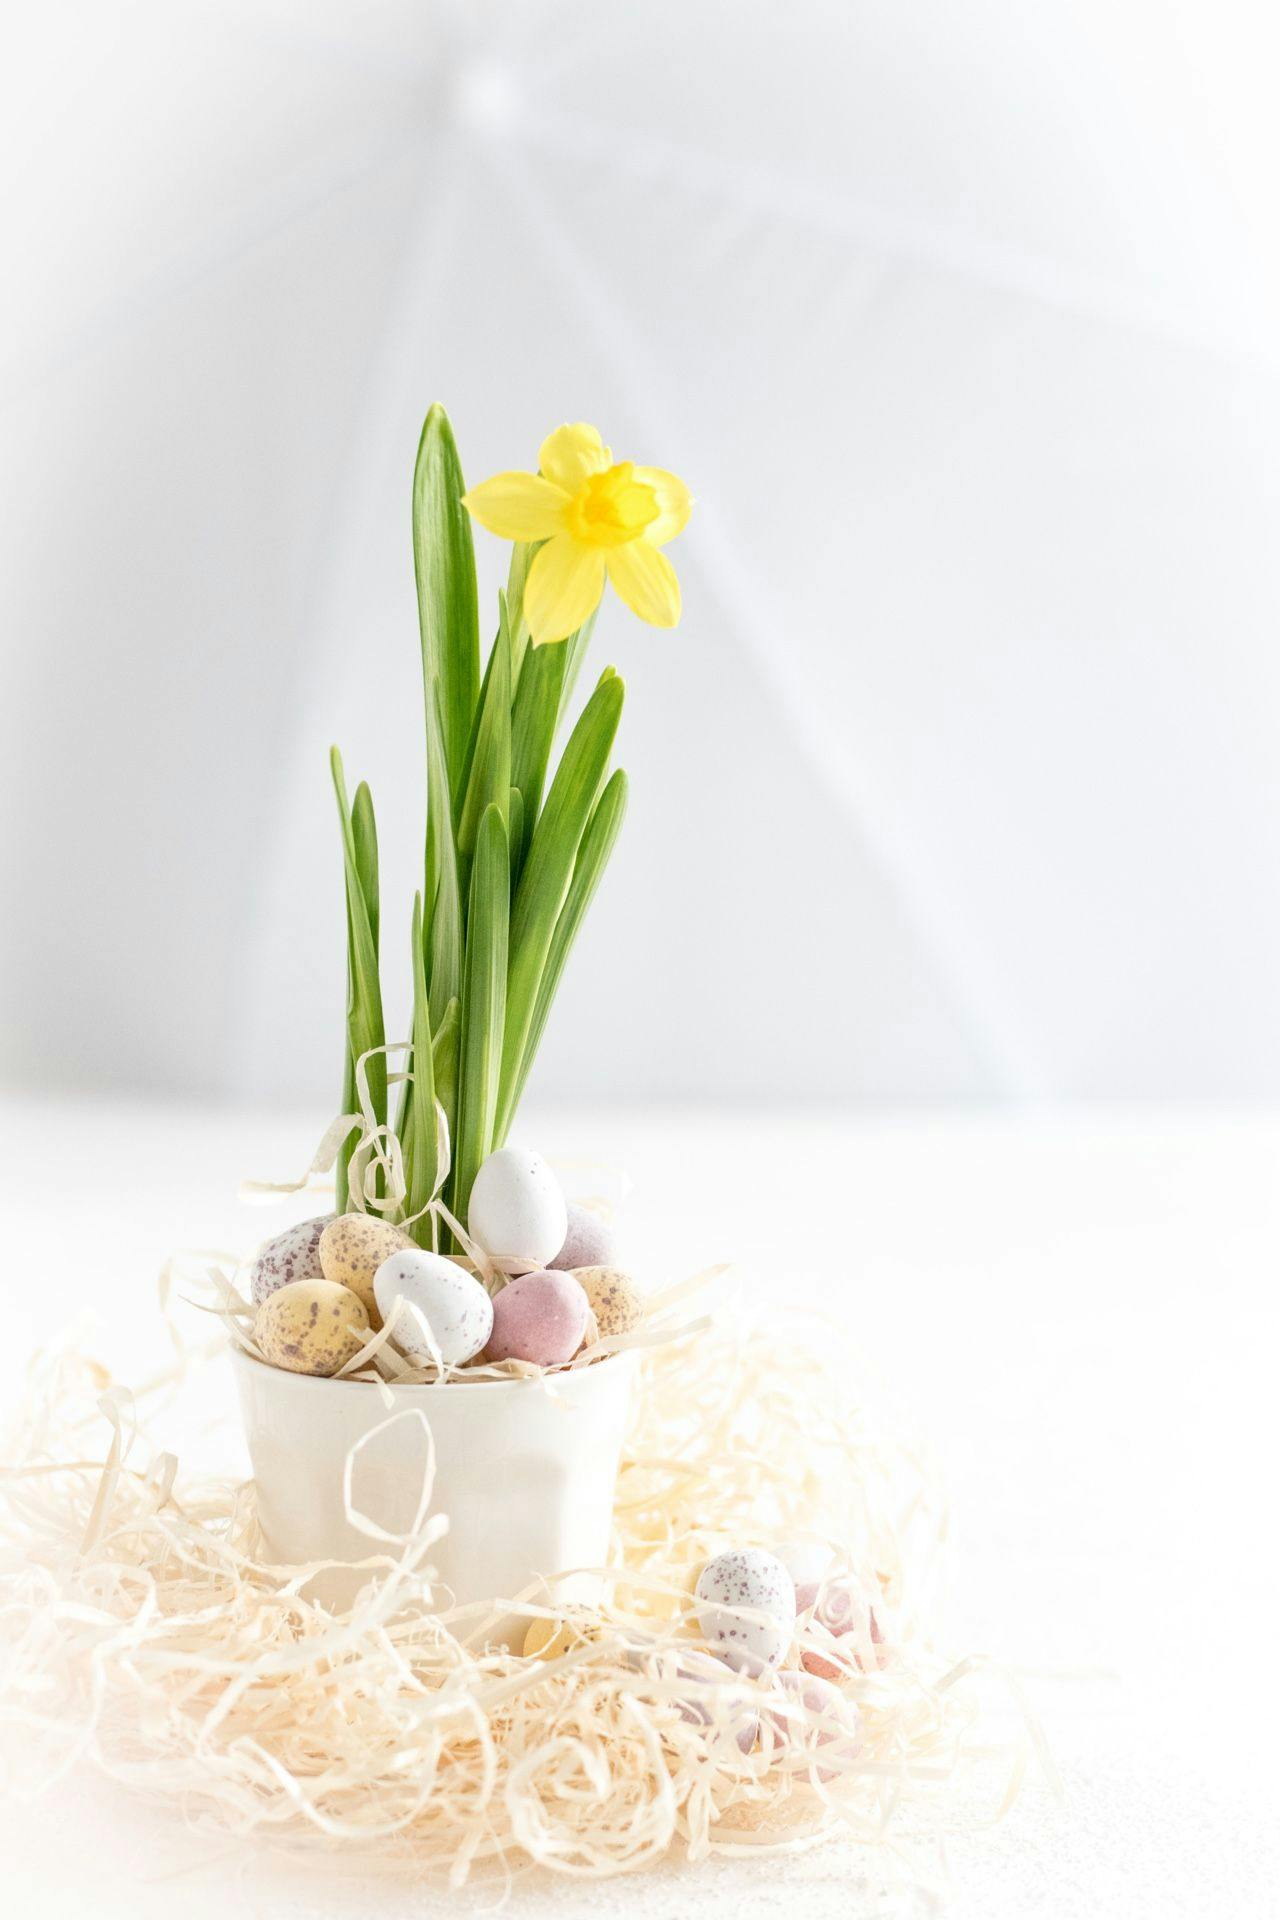 Narzissen sind nebst Osterglocken die Blumenklassiker zu Ostern